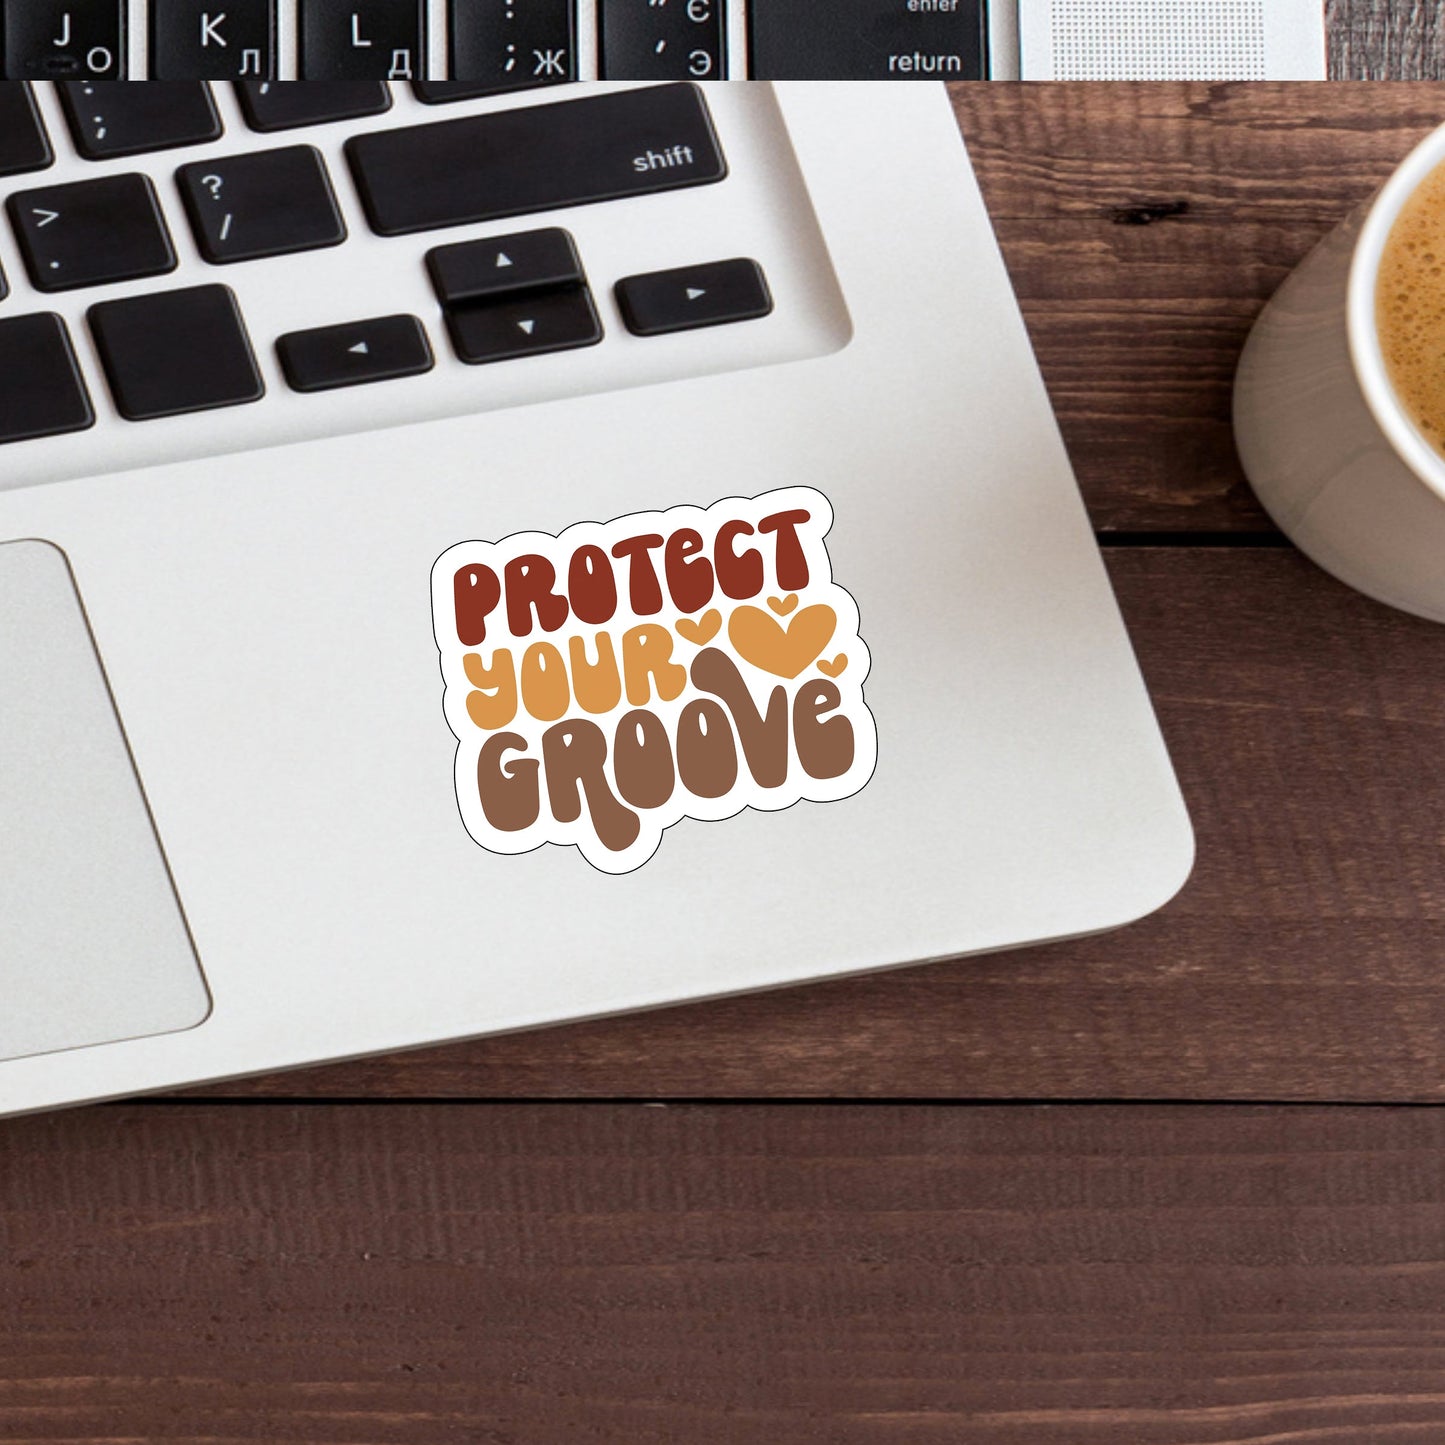 Protectyourgroove  Sticker,  Vinyl sticker, laptop sticker, Tablet sticker